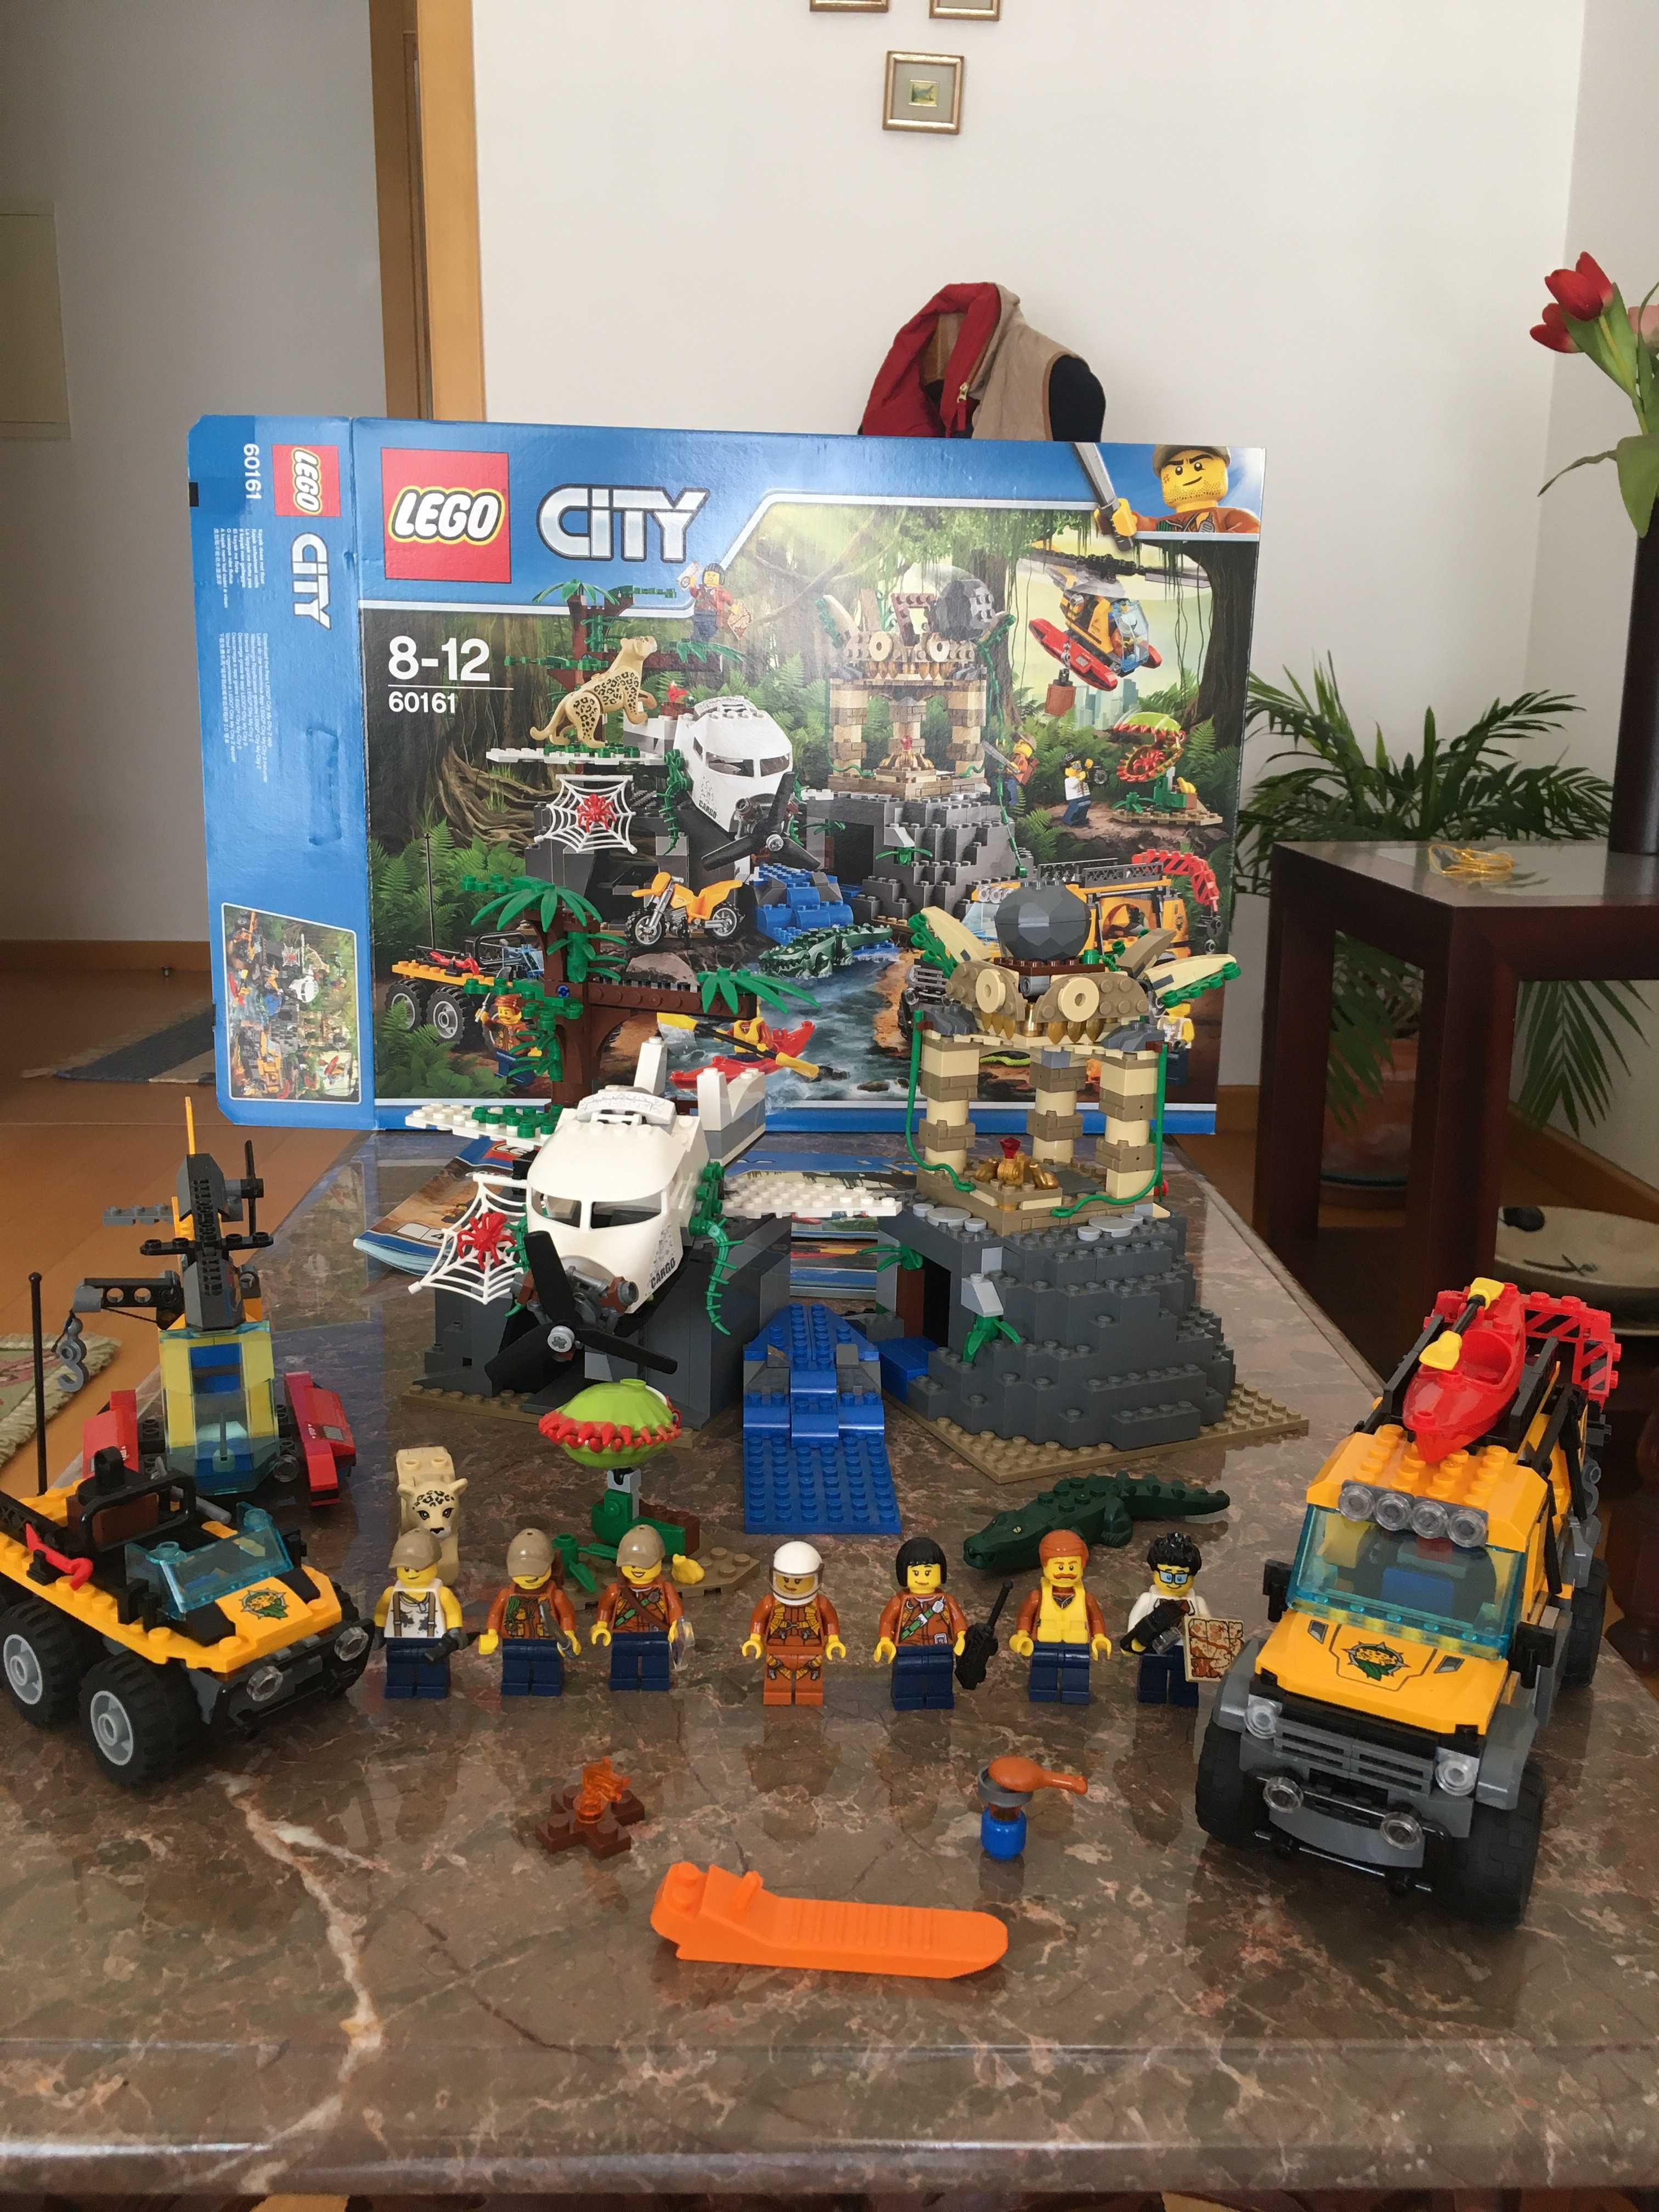 LEGO City 60161 Completo e em bom estado